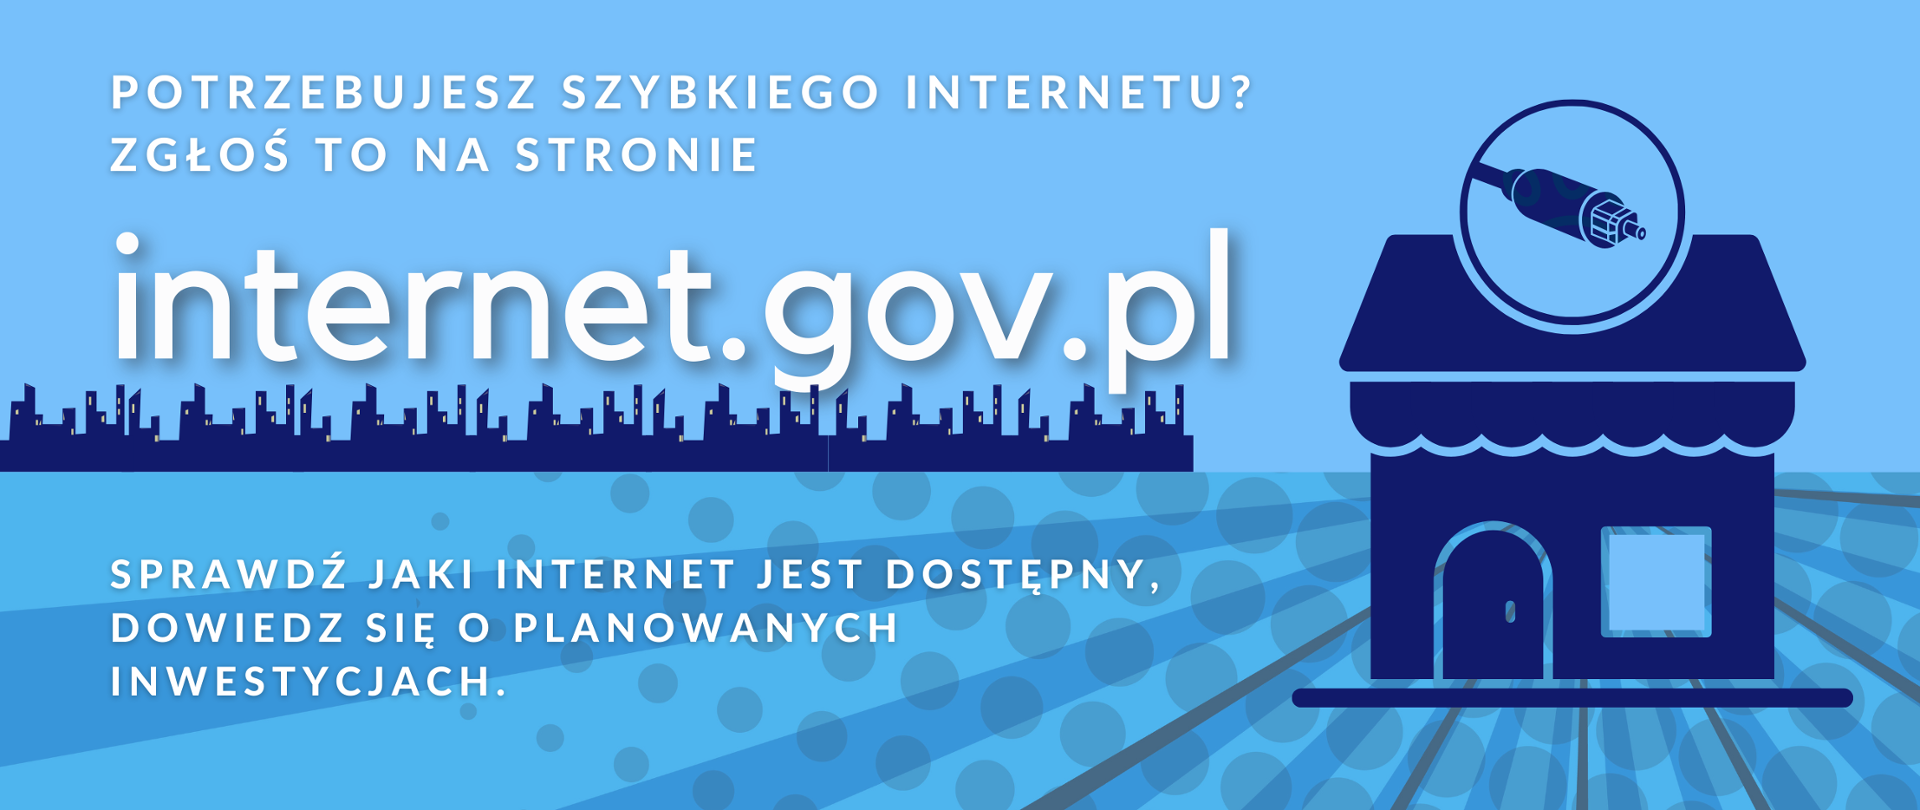 Baner promocyjny serwisu internet.gov.pl na obrazku domek i wtyk światłowodowy